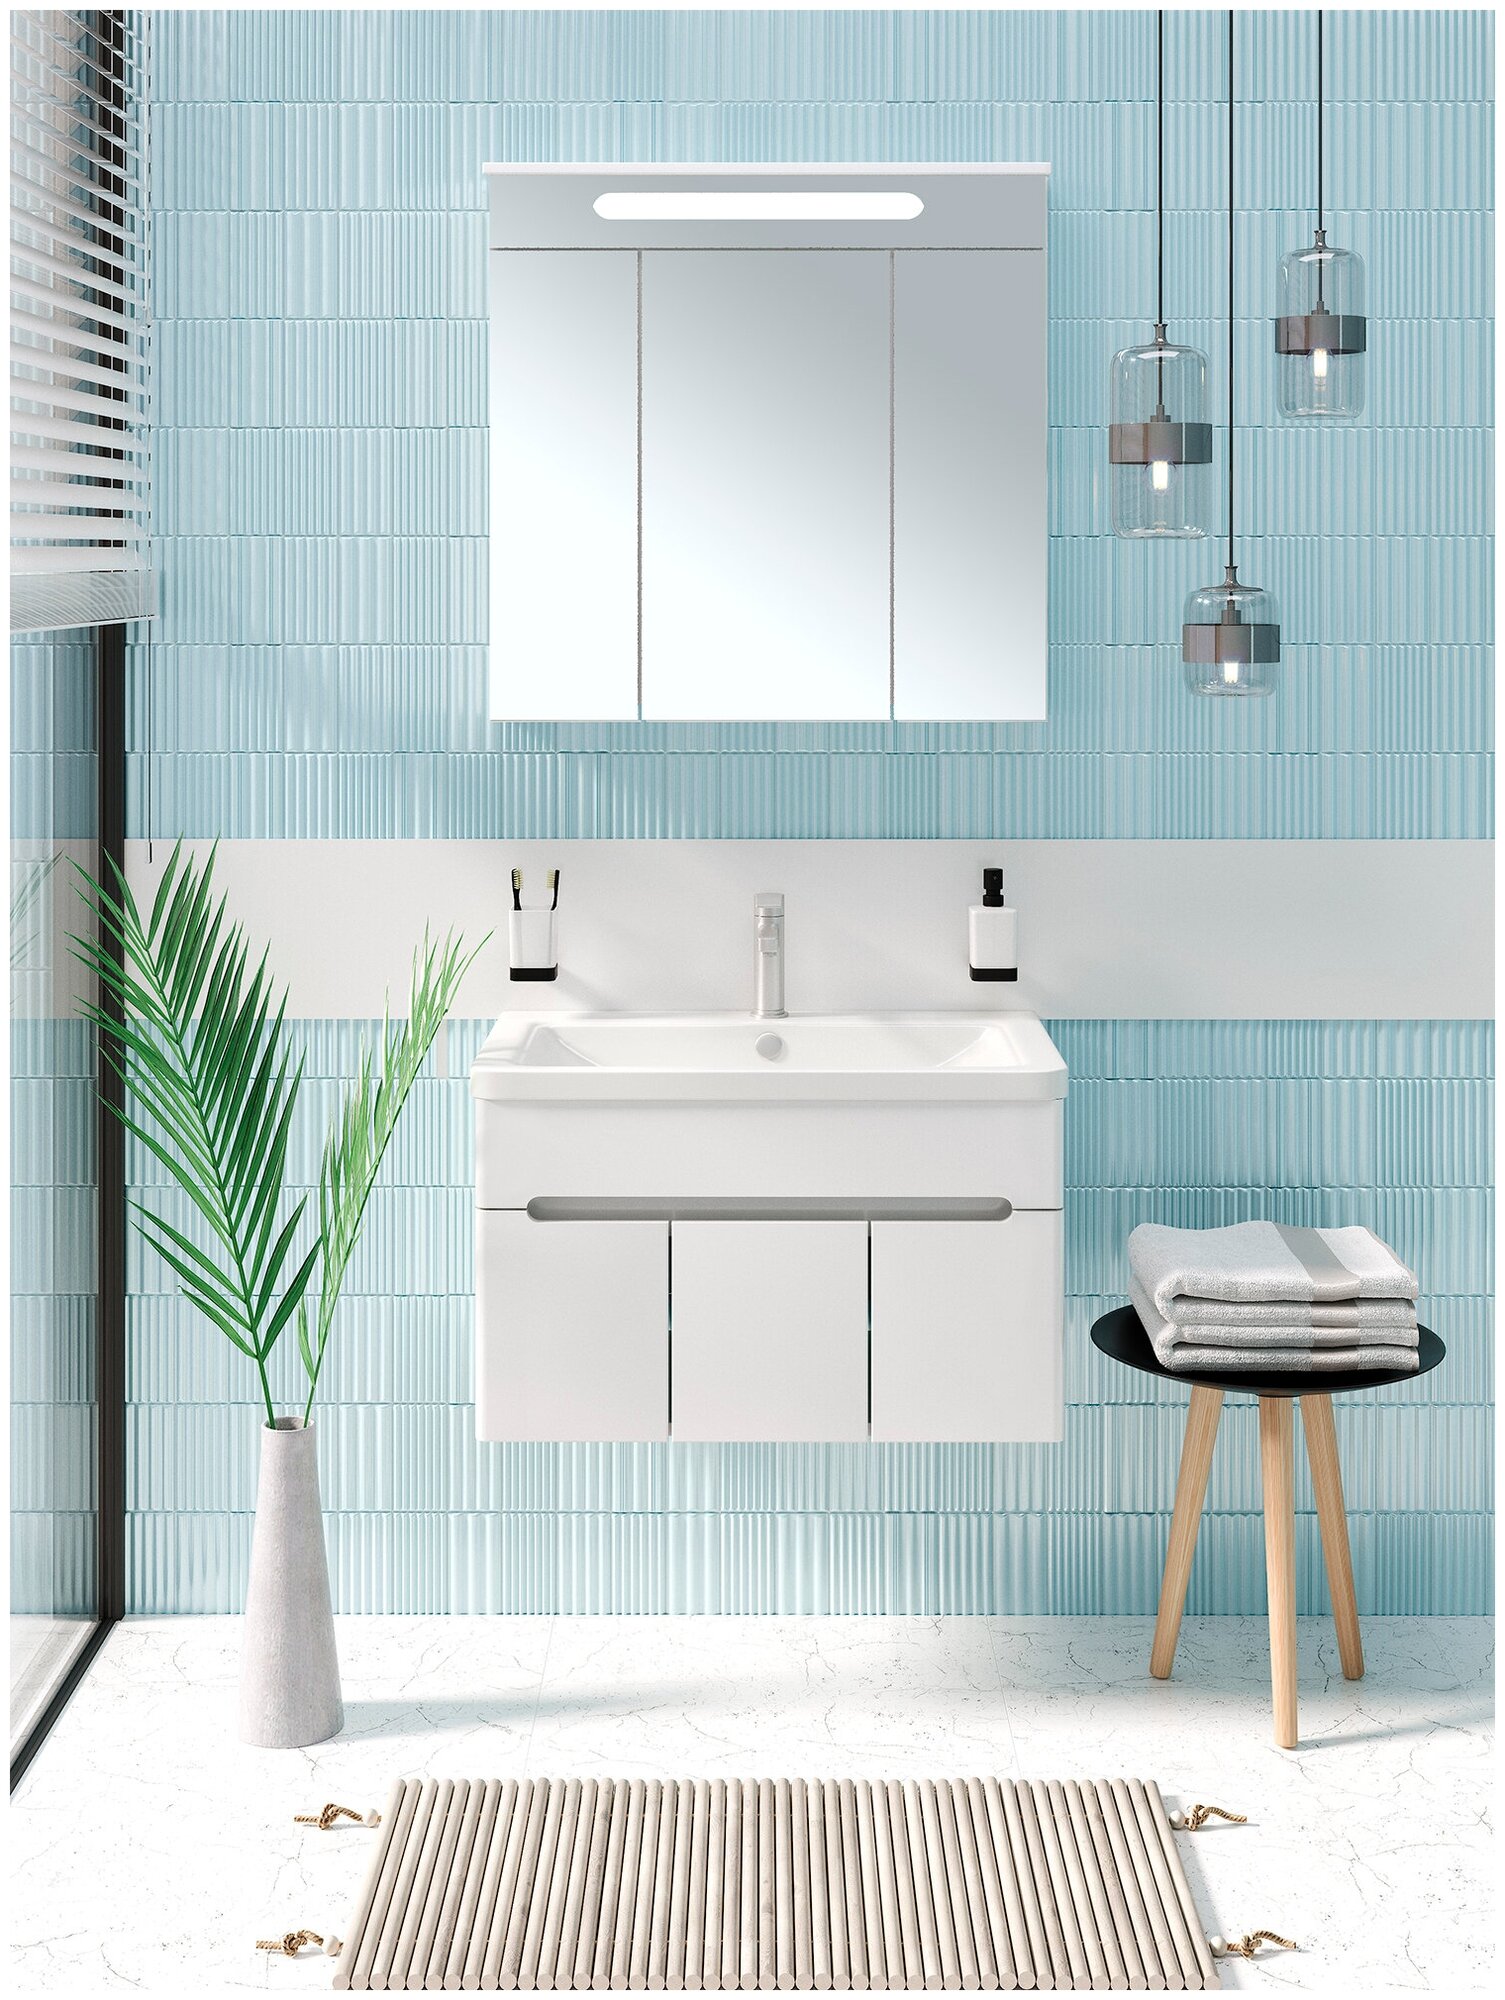 Мебель для ванной / Runo / Парма 75 /3 двери/ подвесной / тумба с раковиной OMEGA 75 / шкаф для ванной / зеркало для ванной